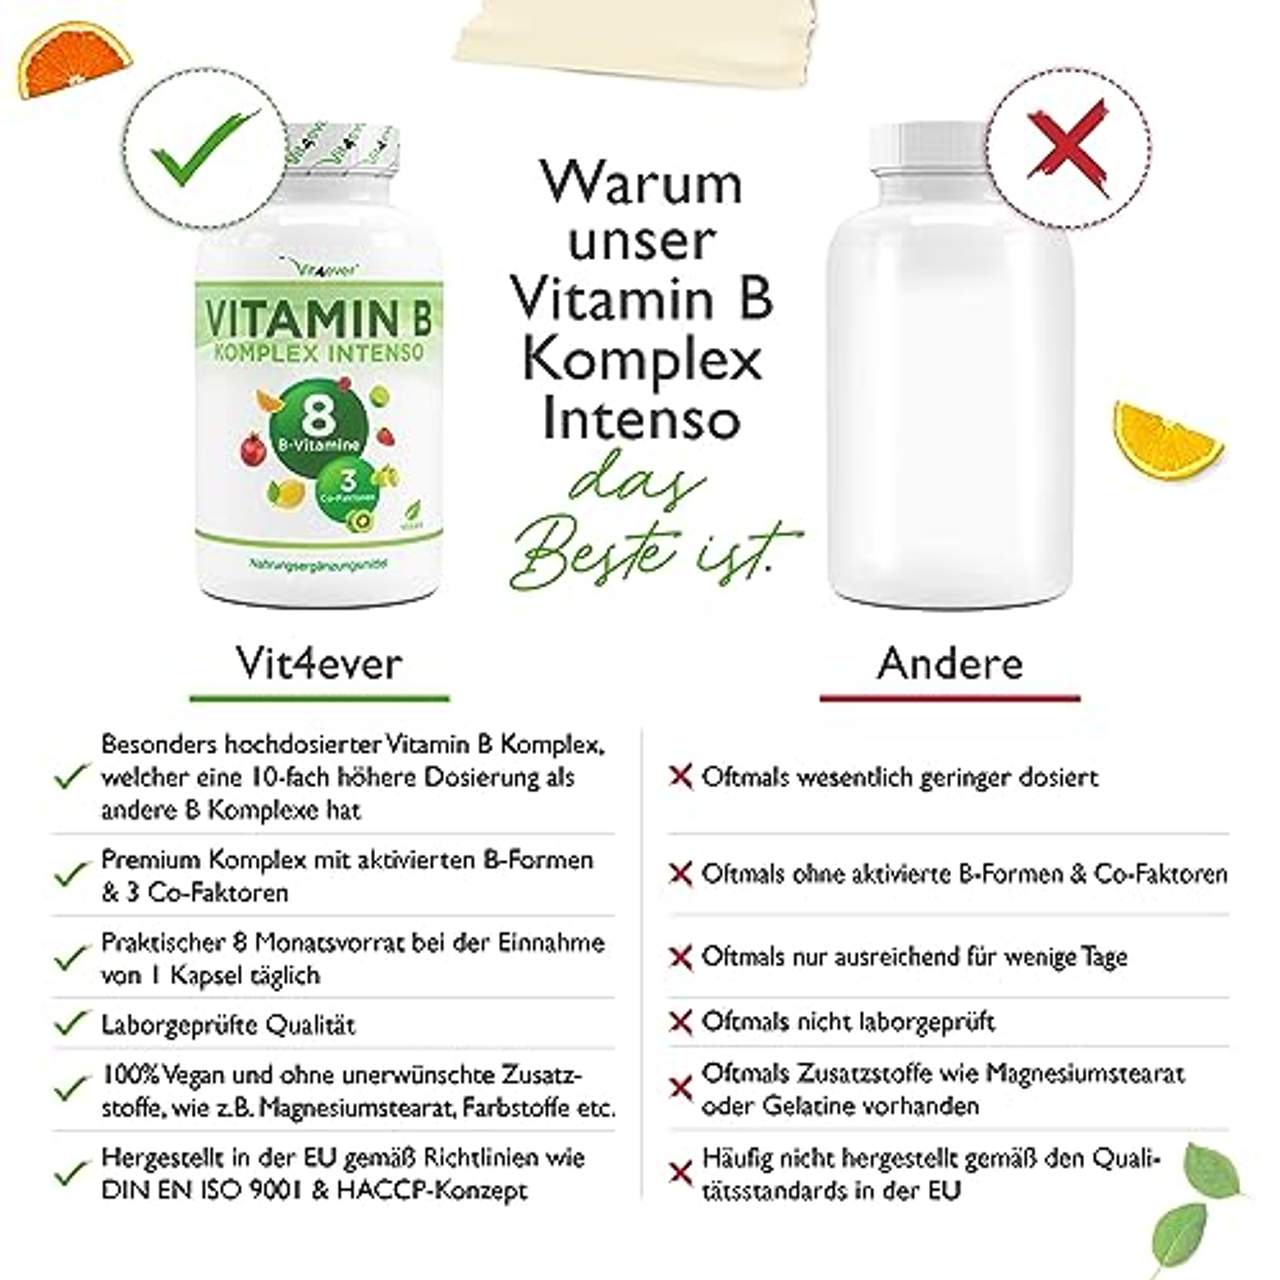 Vitamin B Komplex Intenso